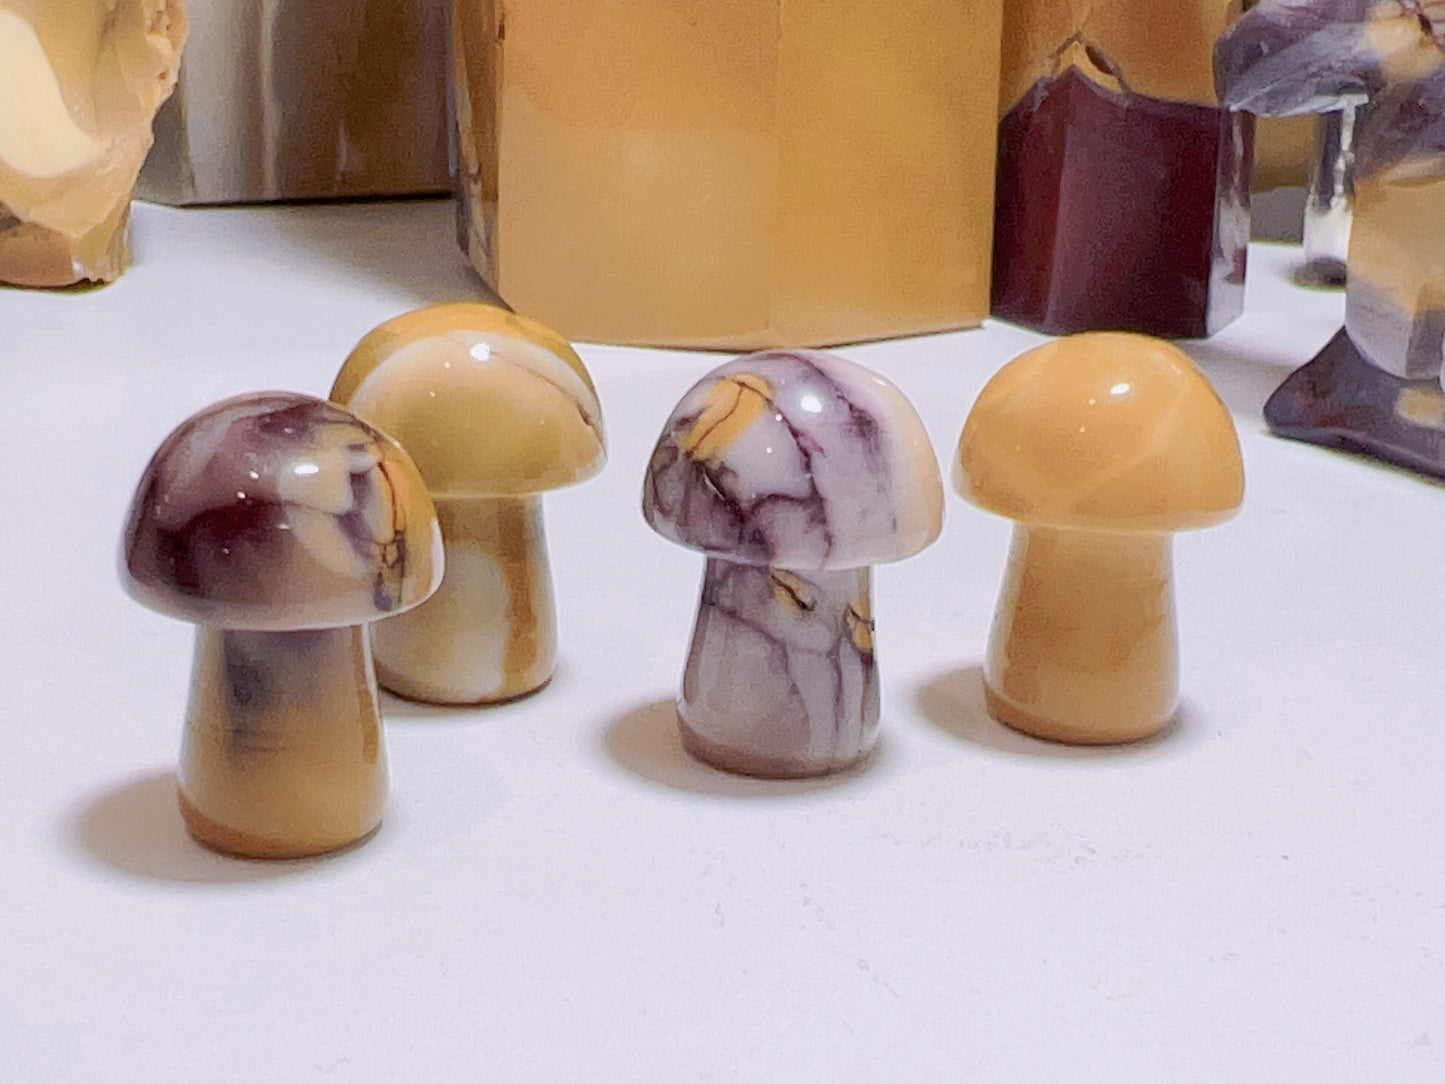 Mookaite Baby Mushrooms